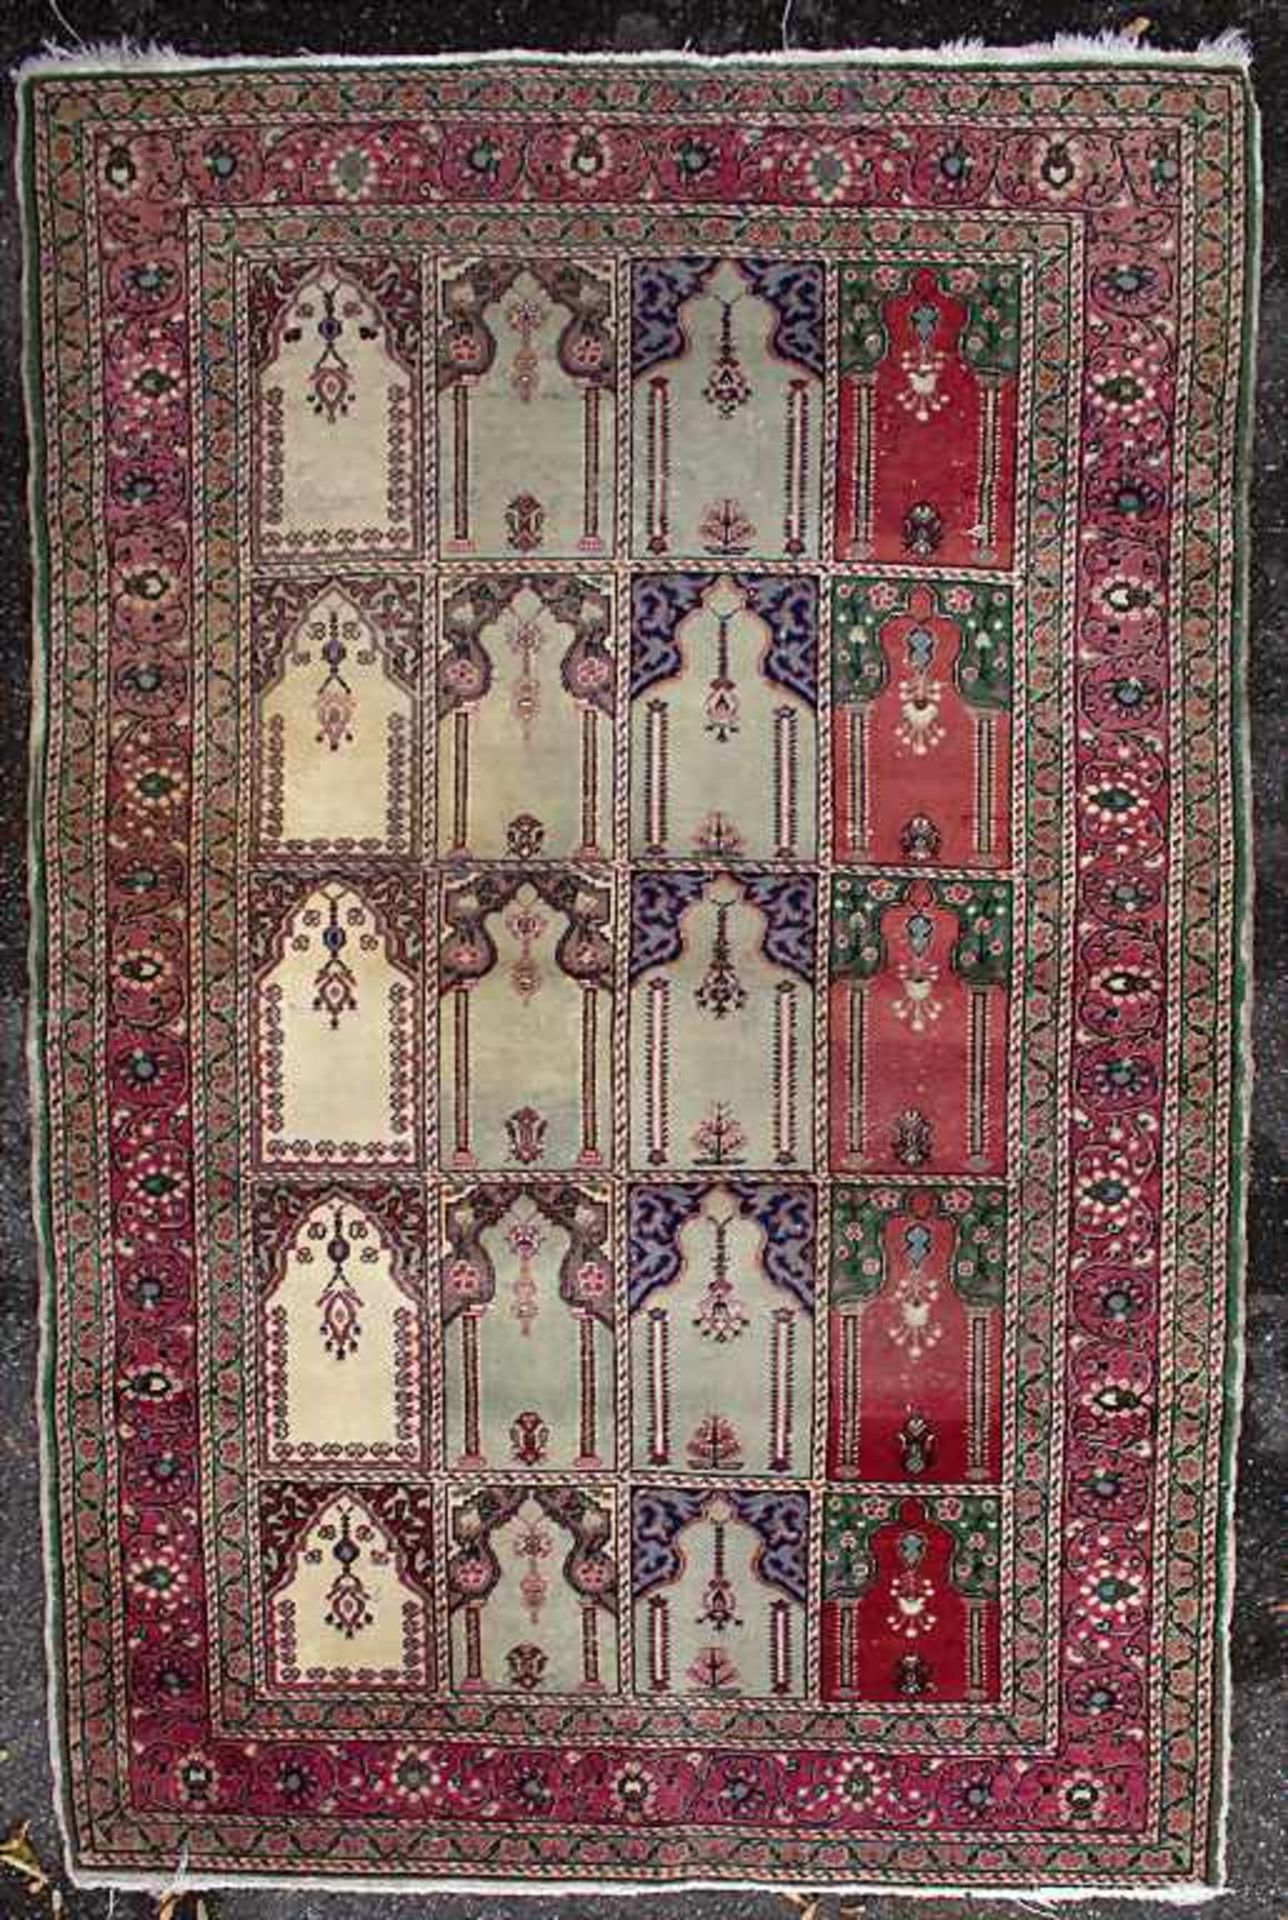 Orienttepppich mit Gebetsnischen / An oriental carpet with mihrabsMaterial: Wolle auf Baumwolle, - Image 2 of 6